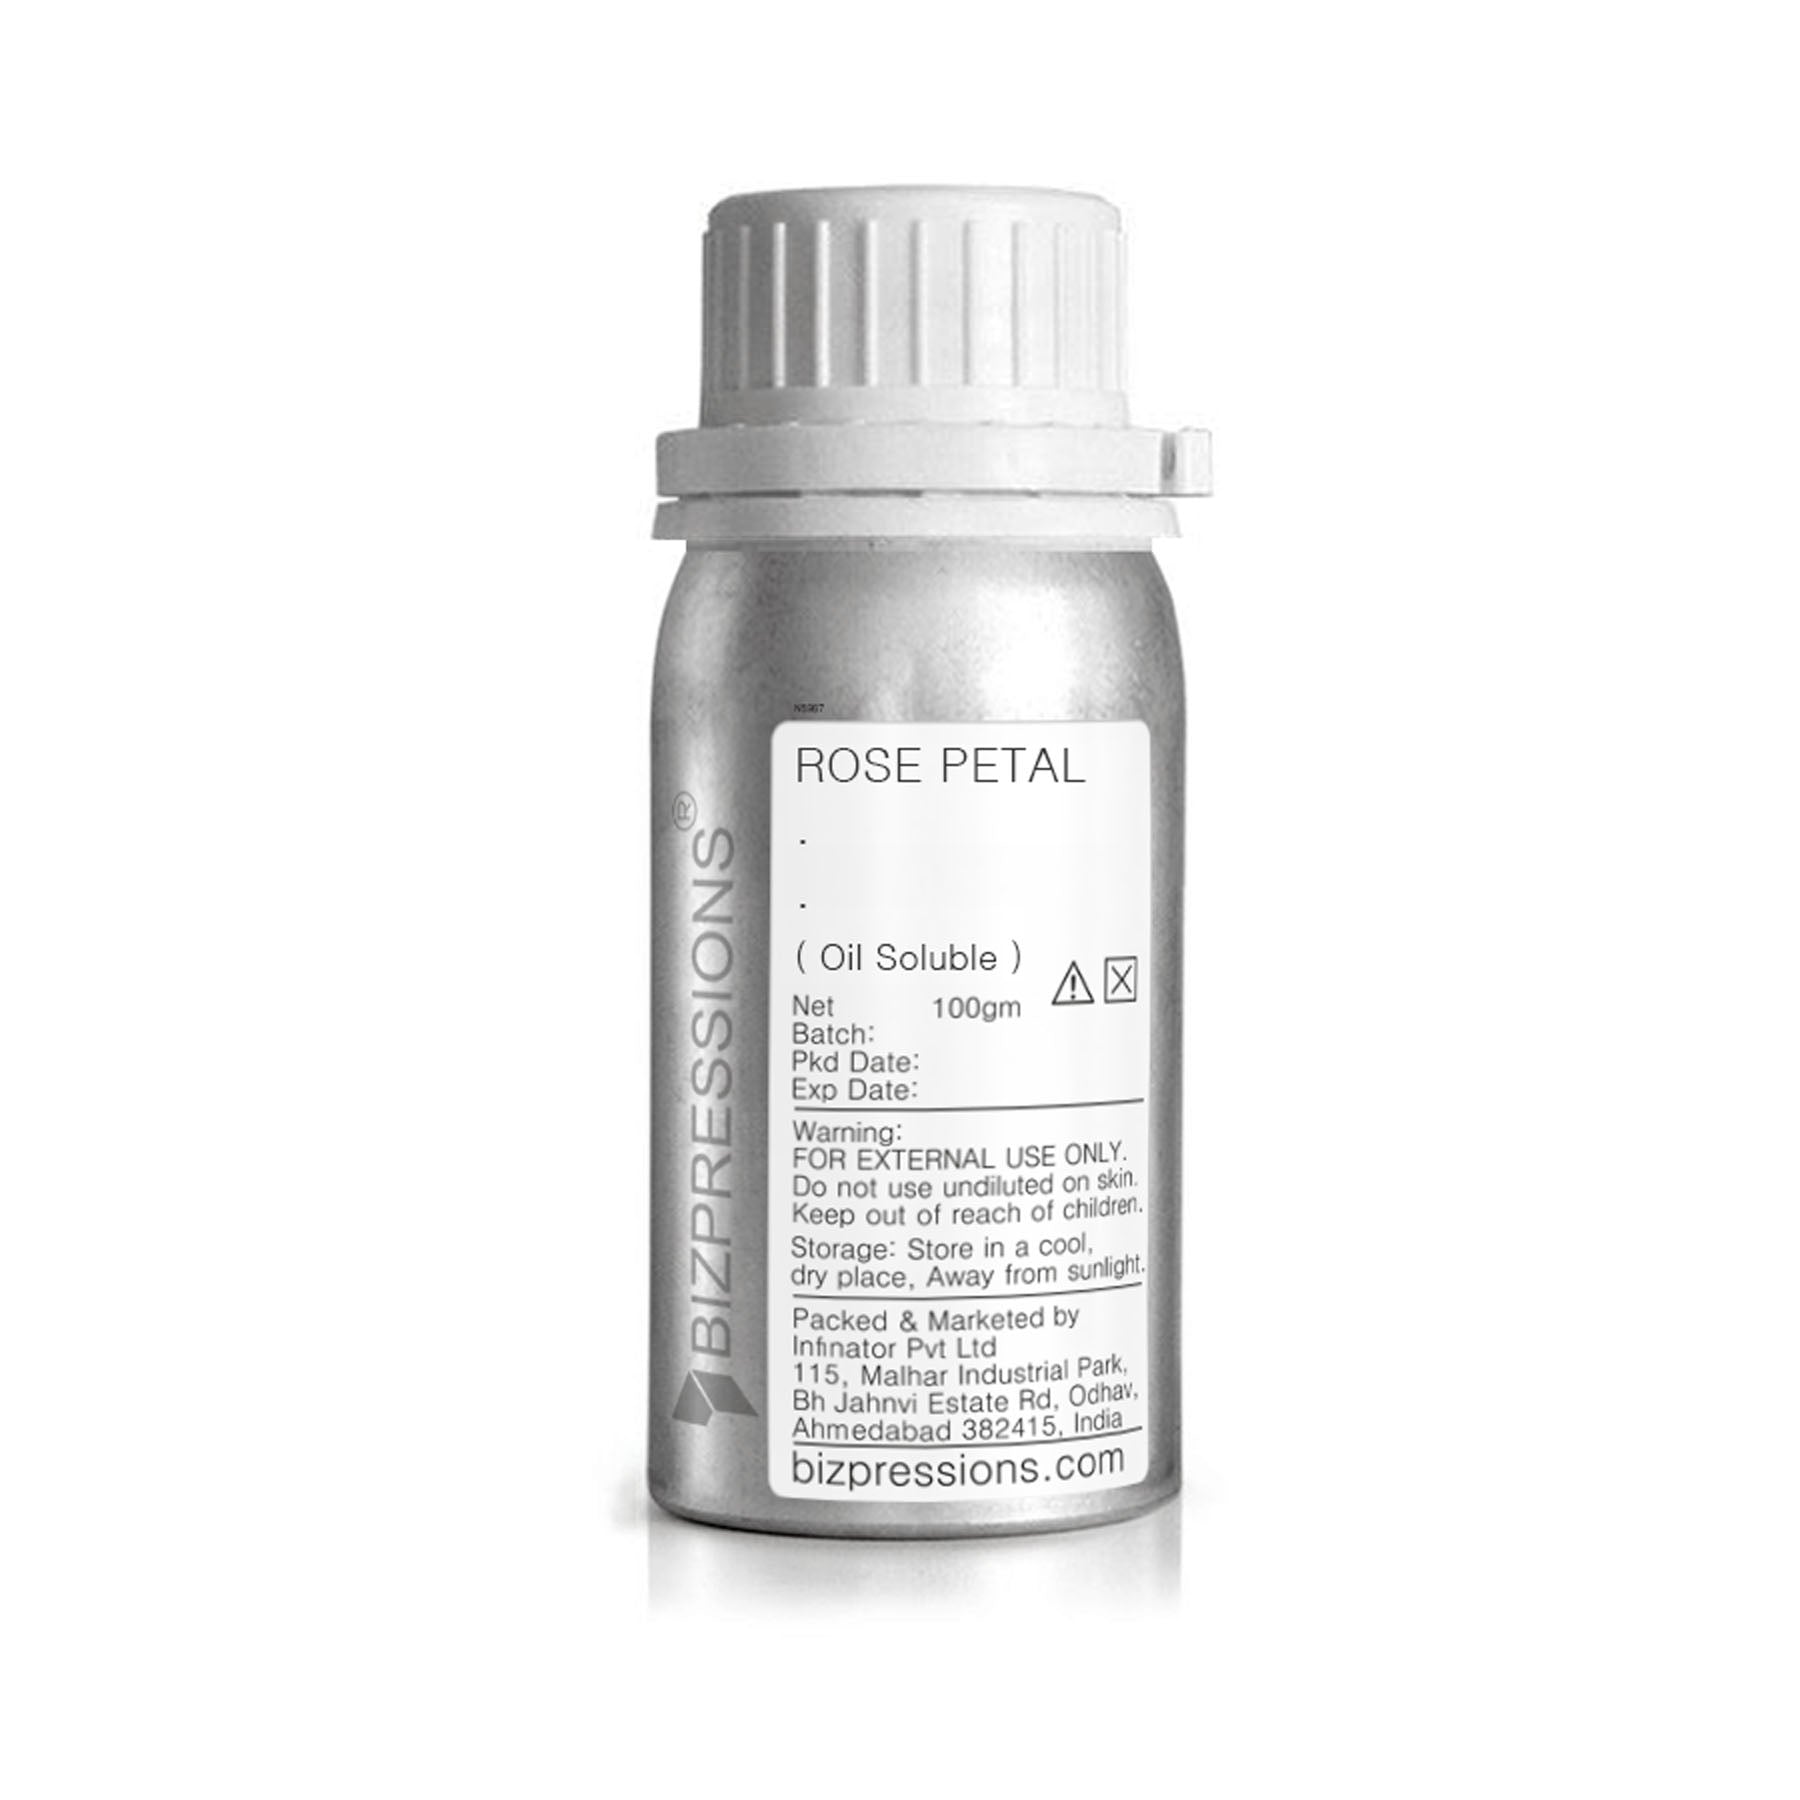 ROSE PETAL - Fragrance ( Oil Soluble ) - 100 gm